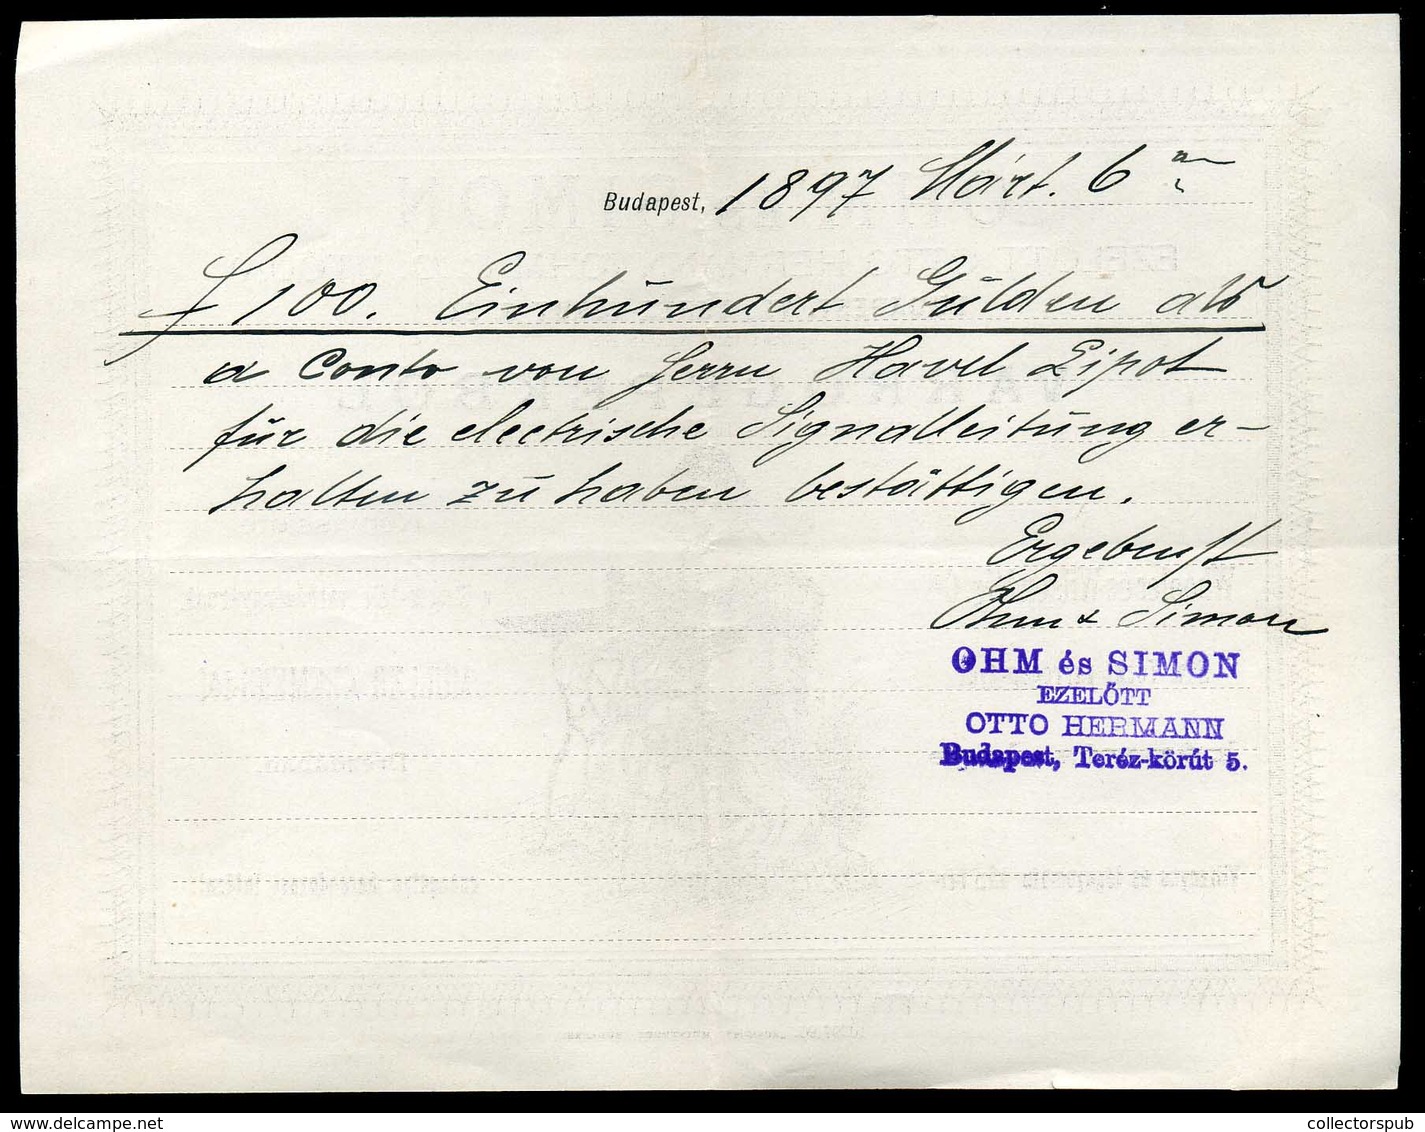 OHM és Simon Varrógépek, Fejléces, Céges Számla 1897. /  Sewing Machines Letterhead Corp. Bill - Ohne Zuordnung